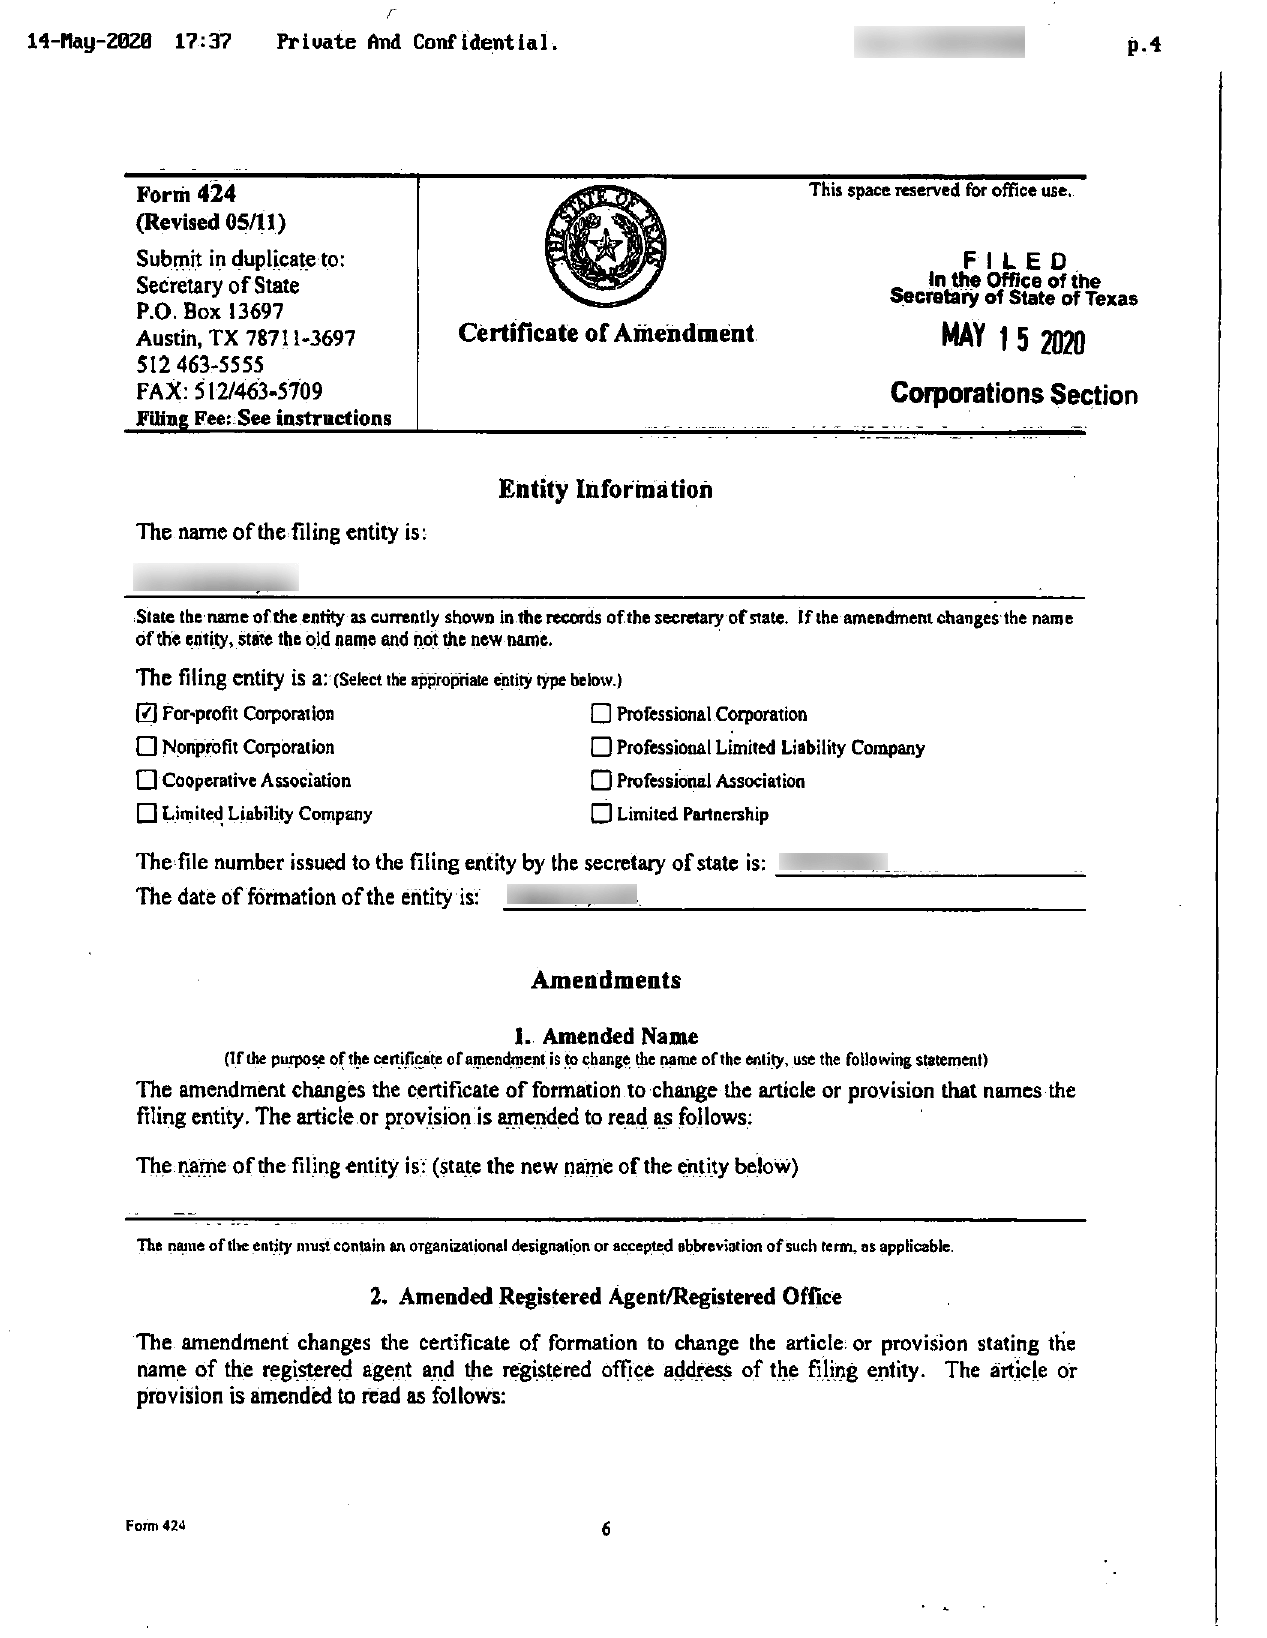 Certificate of Amendment